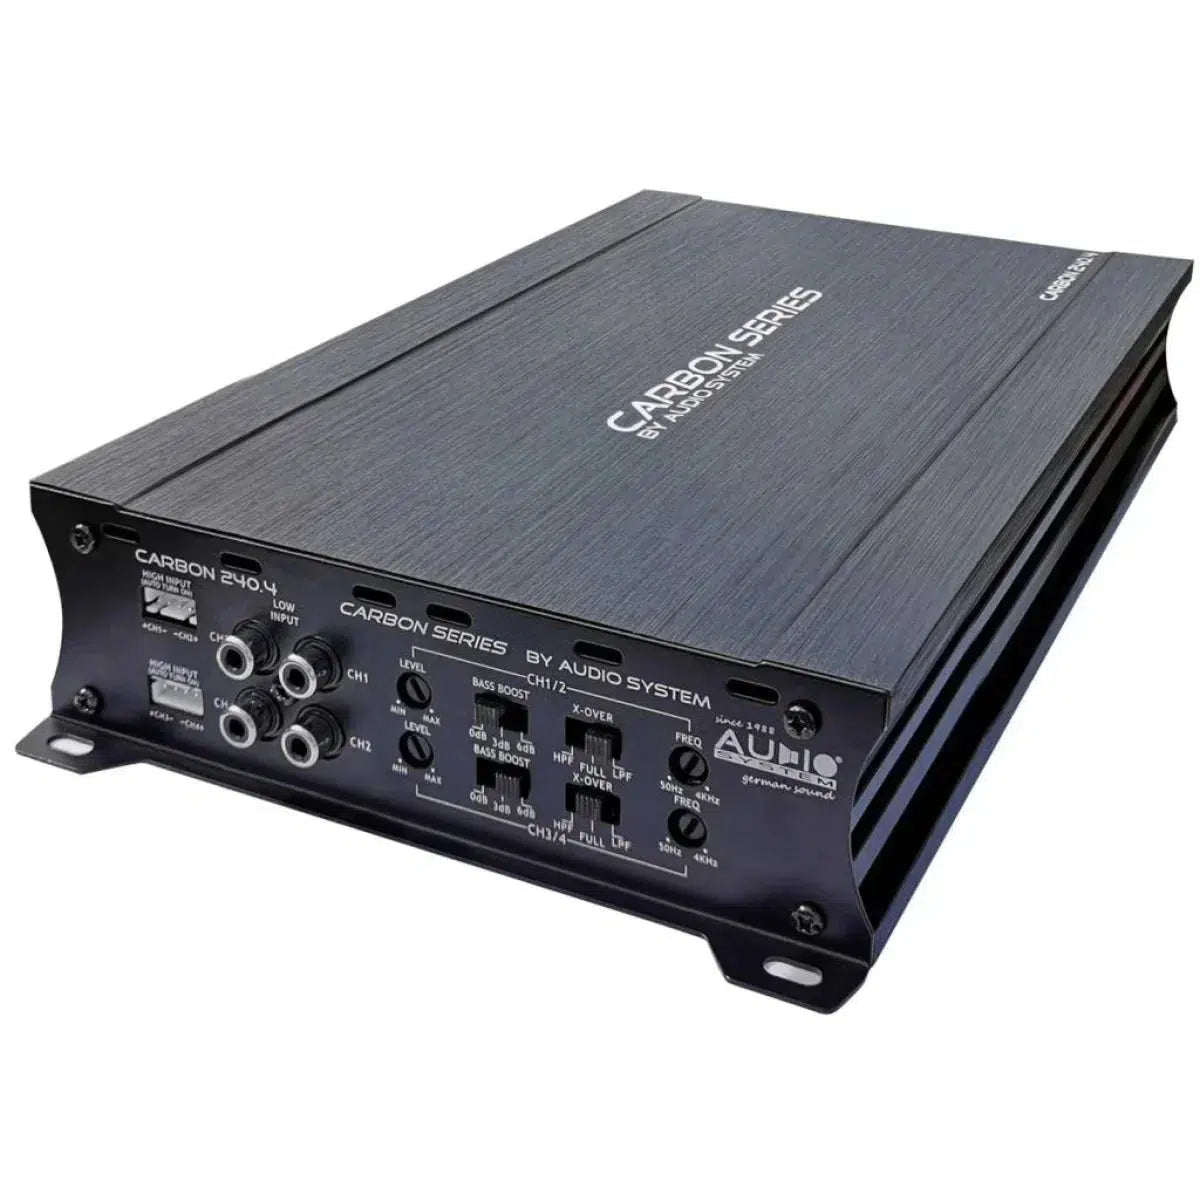 Audio System-Carbon 250.4-4-Channel Amplifier-Masori.de